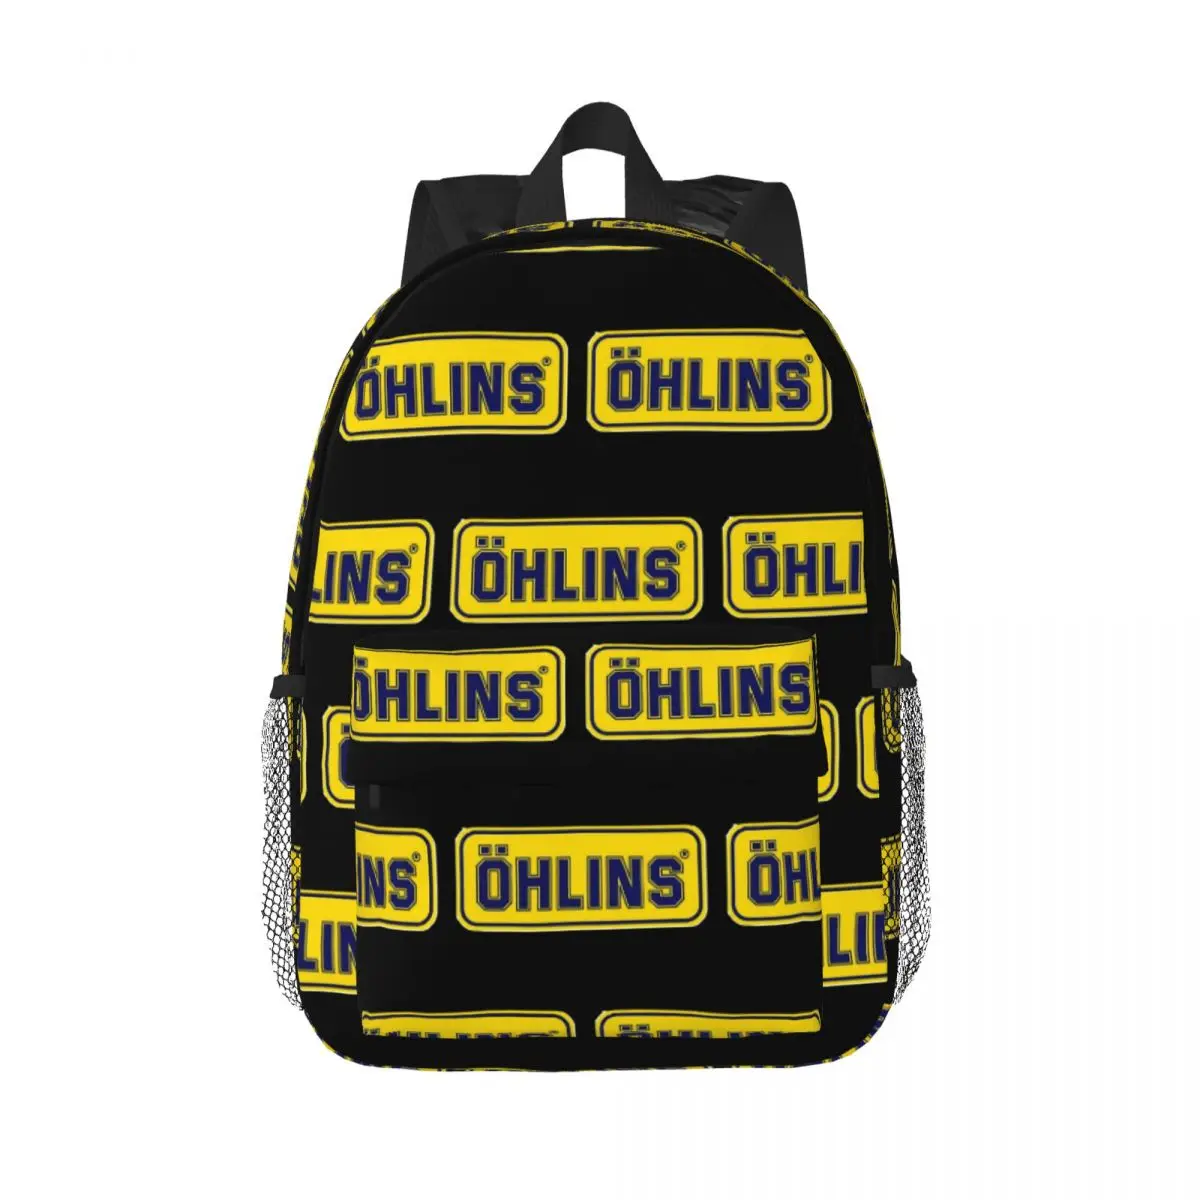 

Best Seller Ohlins Backpacks Teenager Bookbag Fashion Children School Bags Laptop Rucksack Shoulder Bag Large Capacity